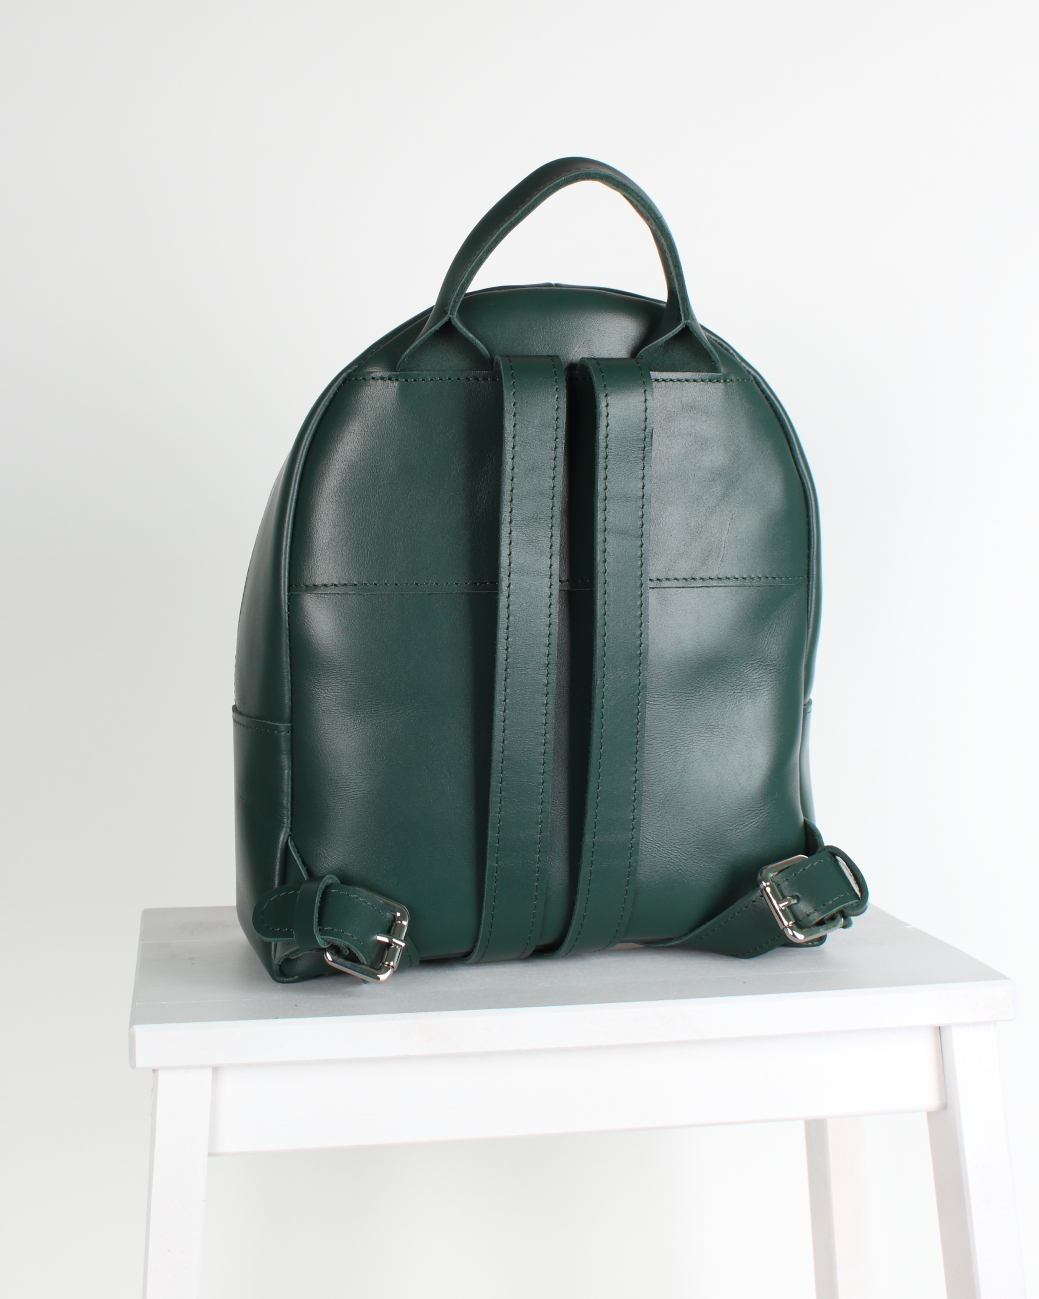 Женский рюкзак из натуральной кожи изумрудный B008 emerald